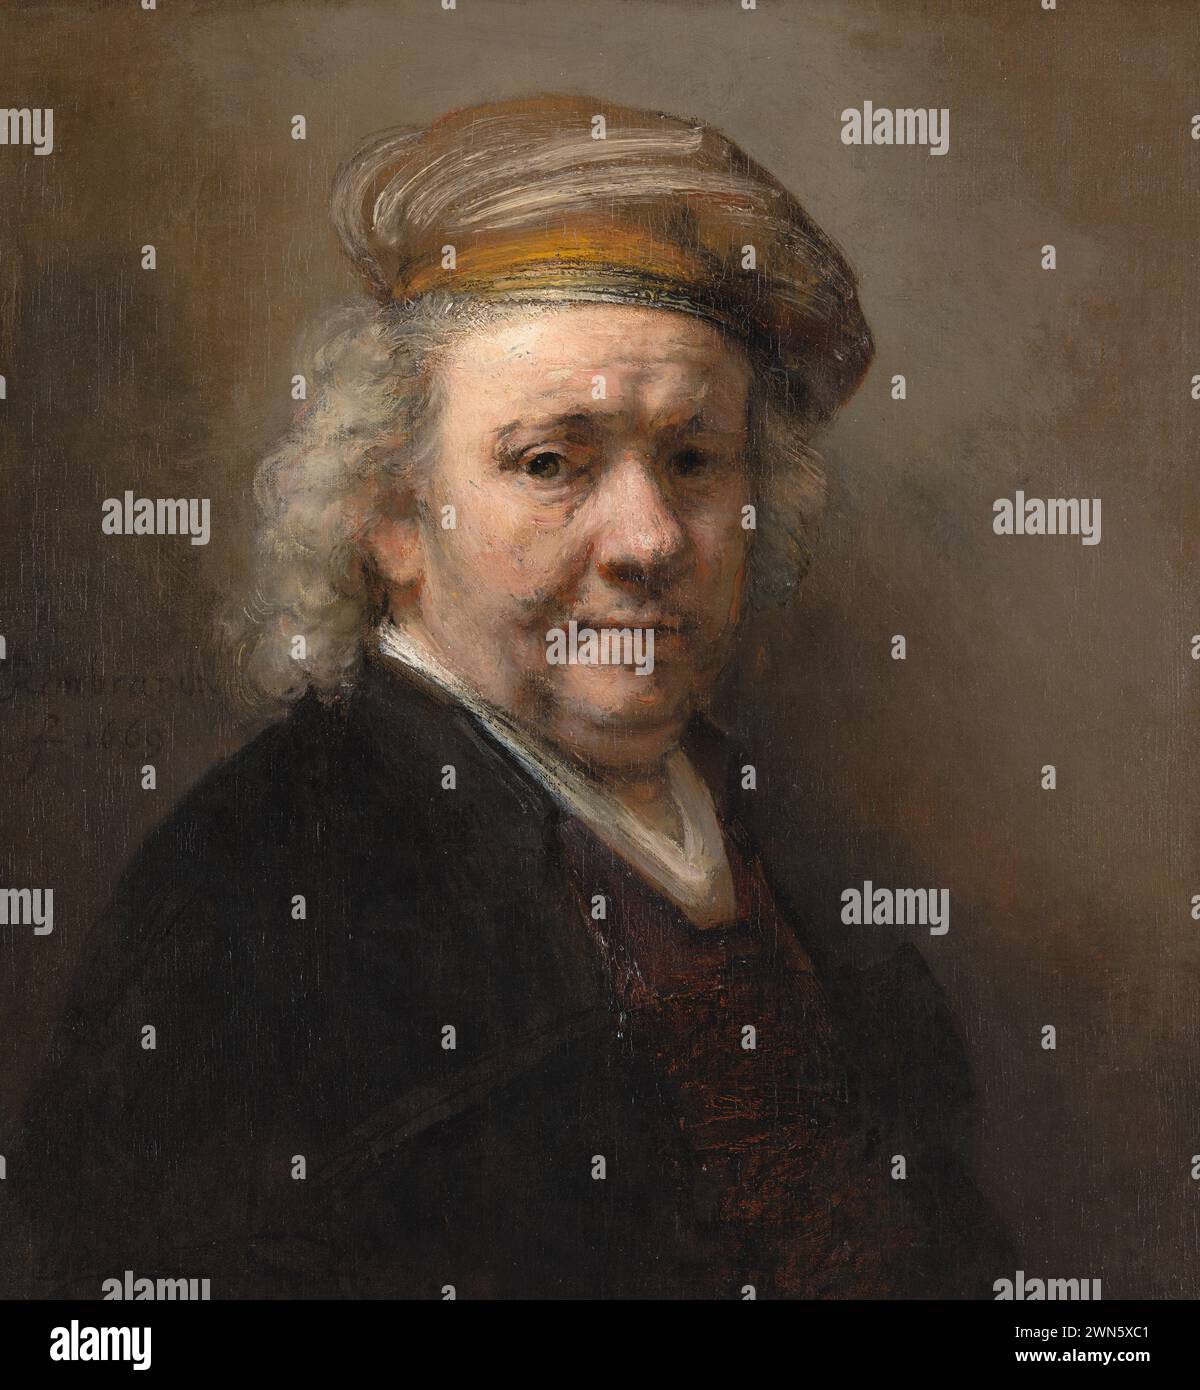 Rembrandt - Autoritratto (1669) Stock Photo